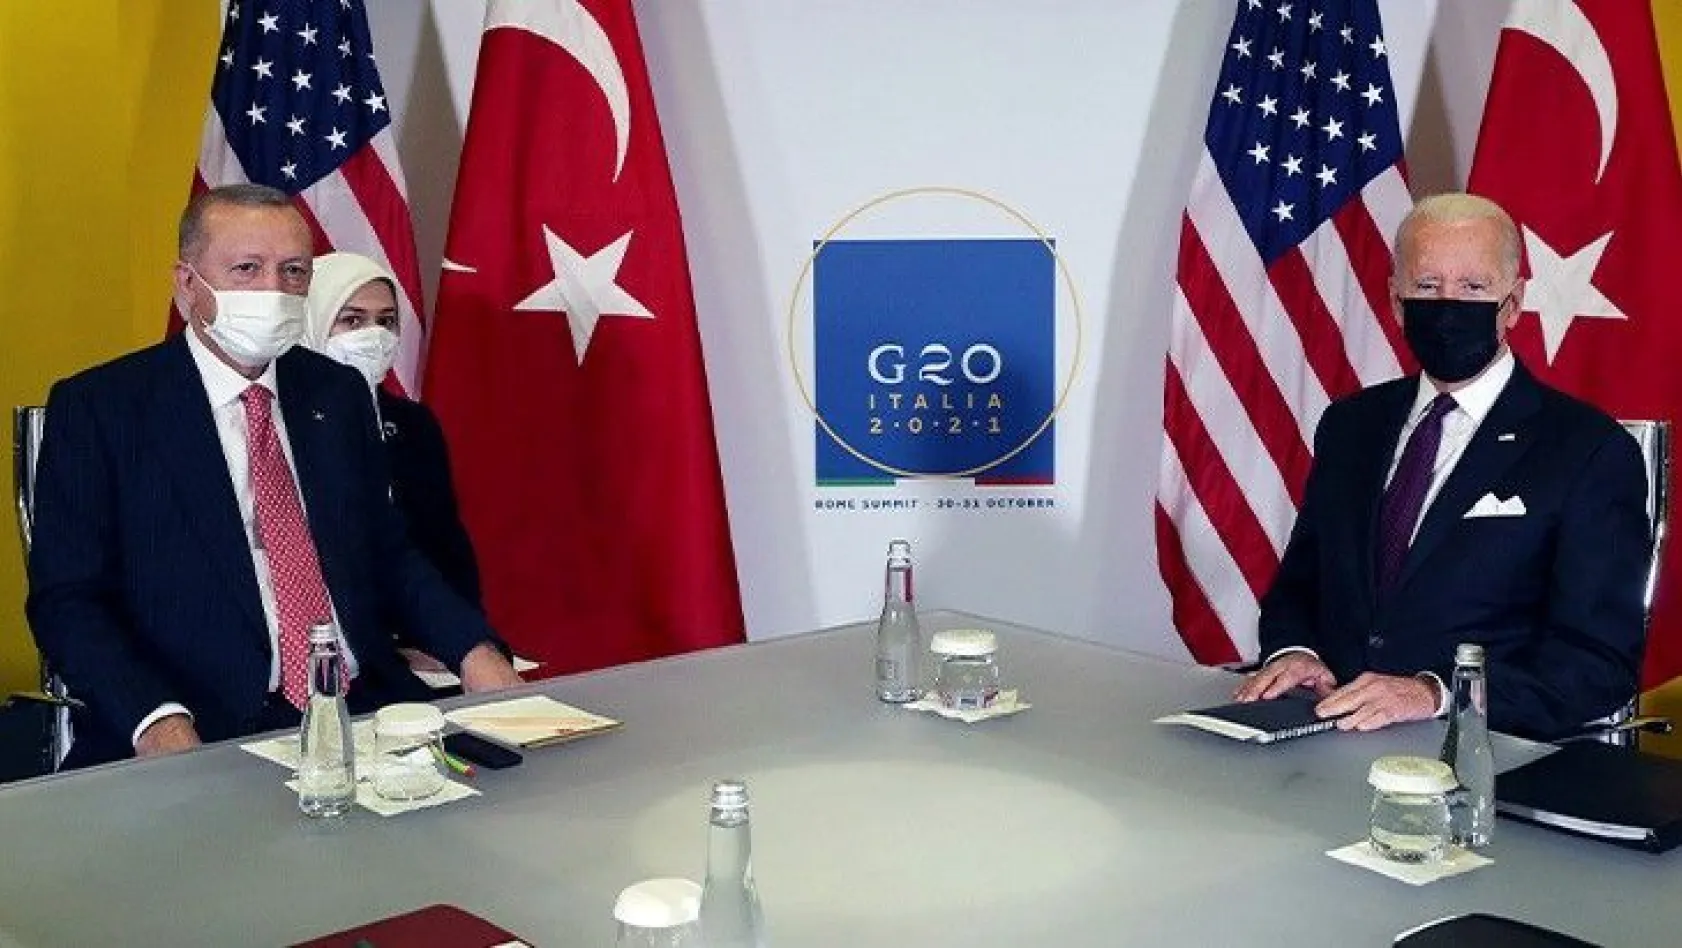 Cumhurbaşkanı Erdoğan ile ABD Başkanı Biden görüştü